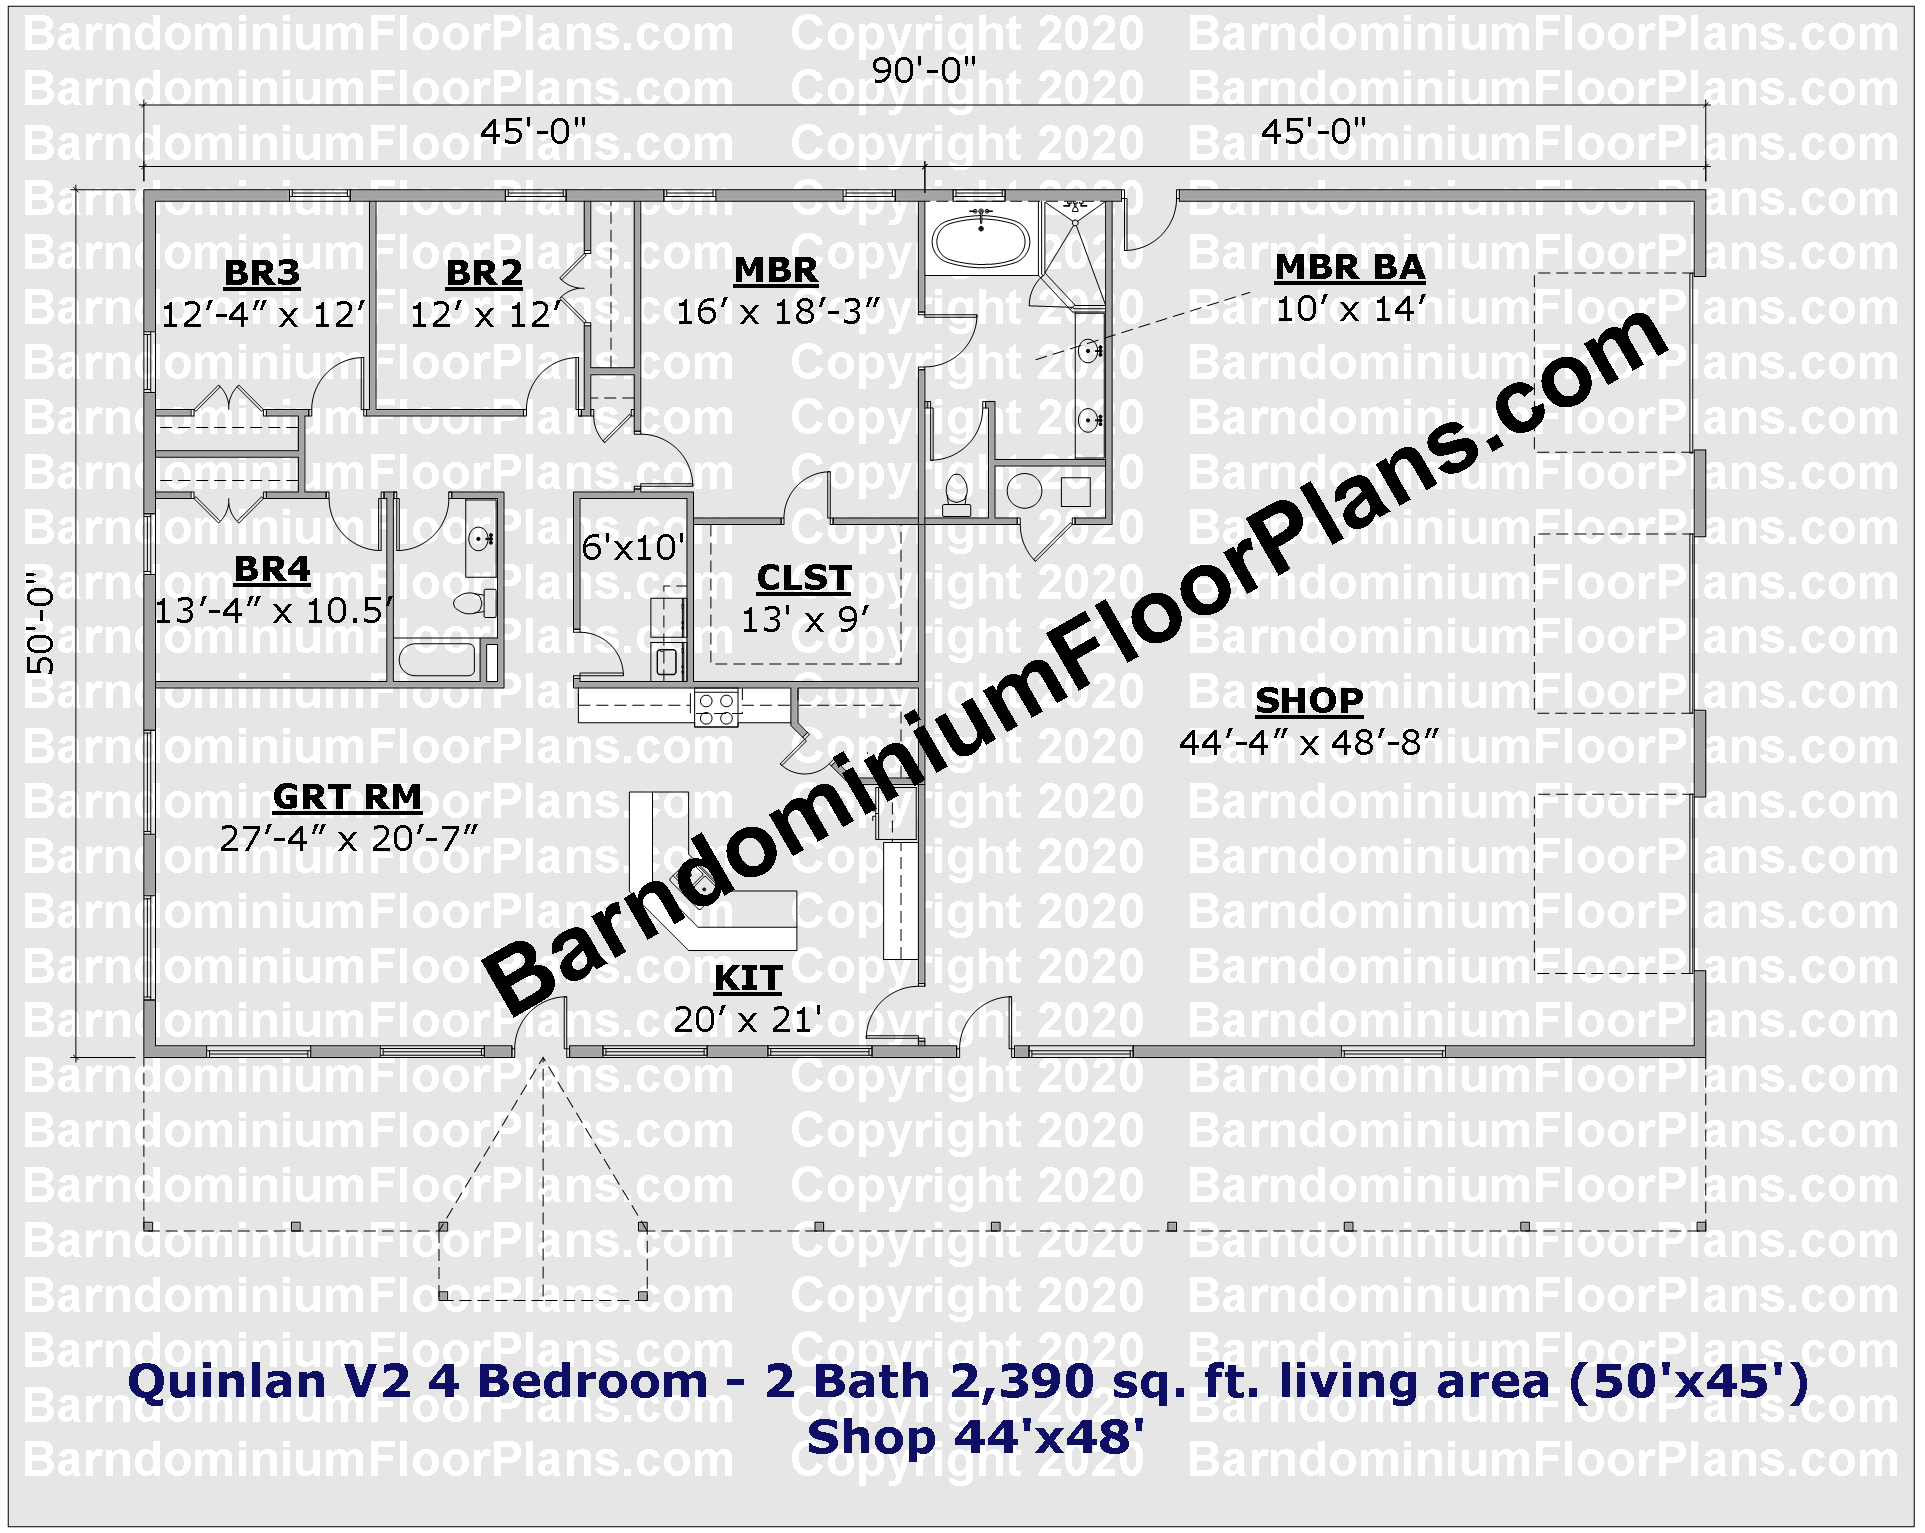 Quinlan V2 4 Bedroom 2 Bath 2390 sq ft